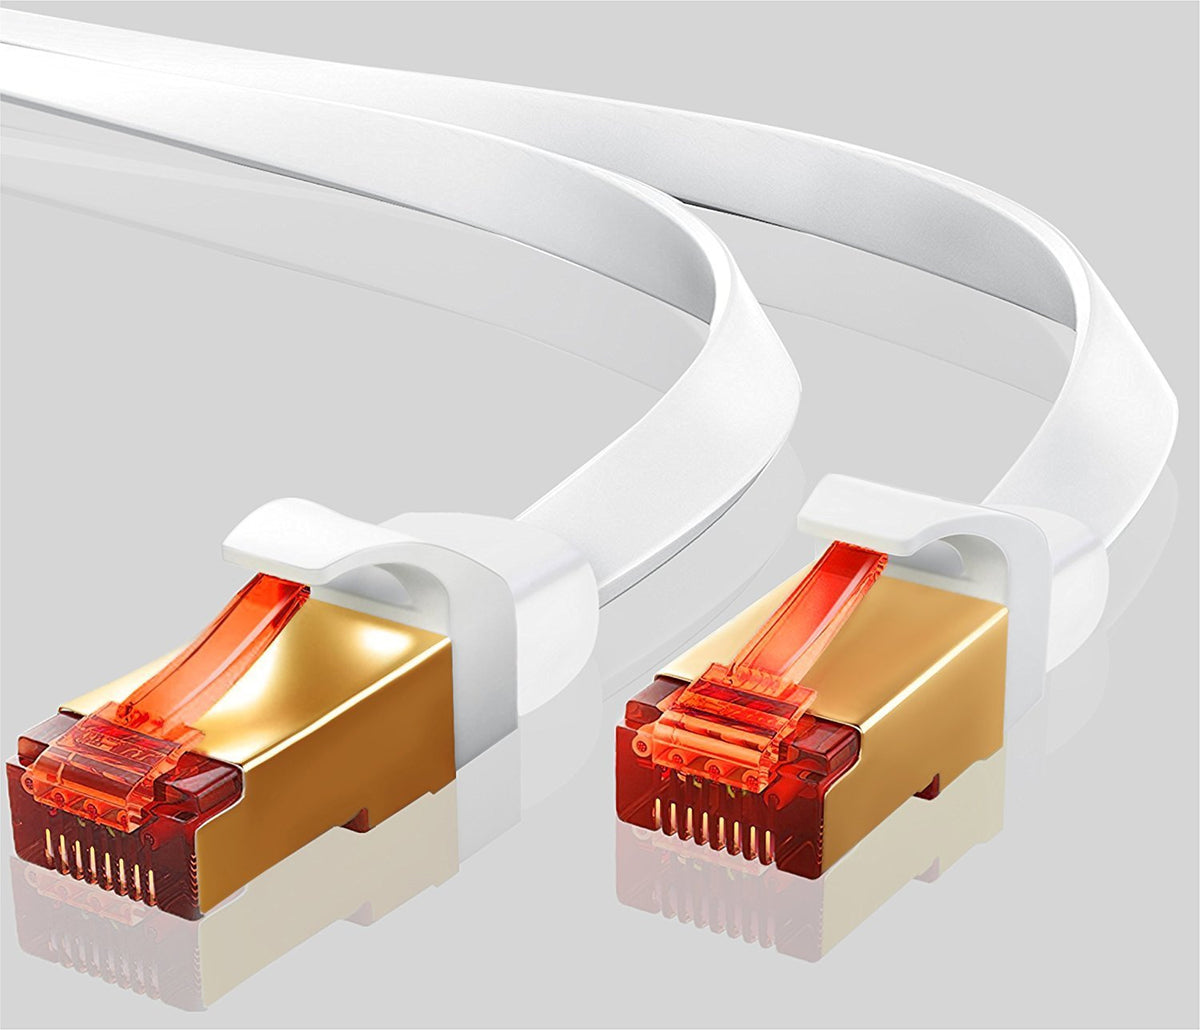 20M LAN Flat Ethernet Cable White - (Box: 35 Units)